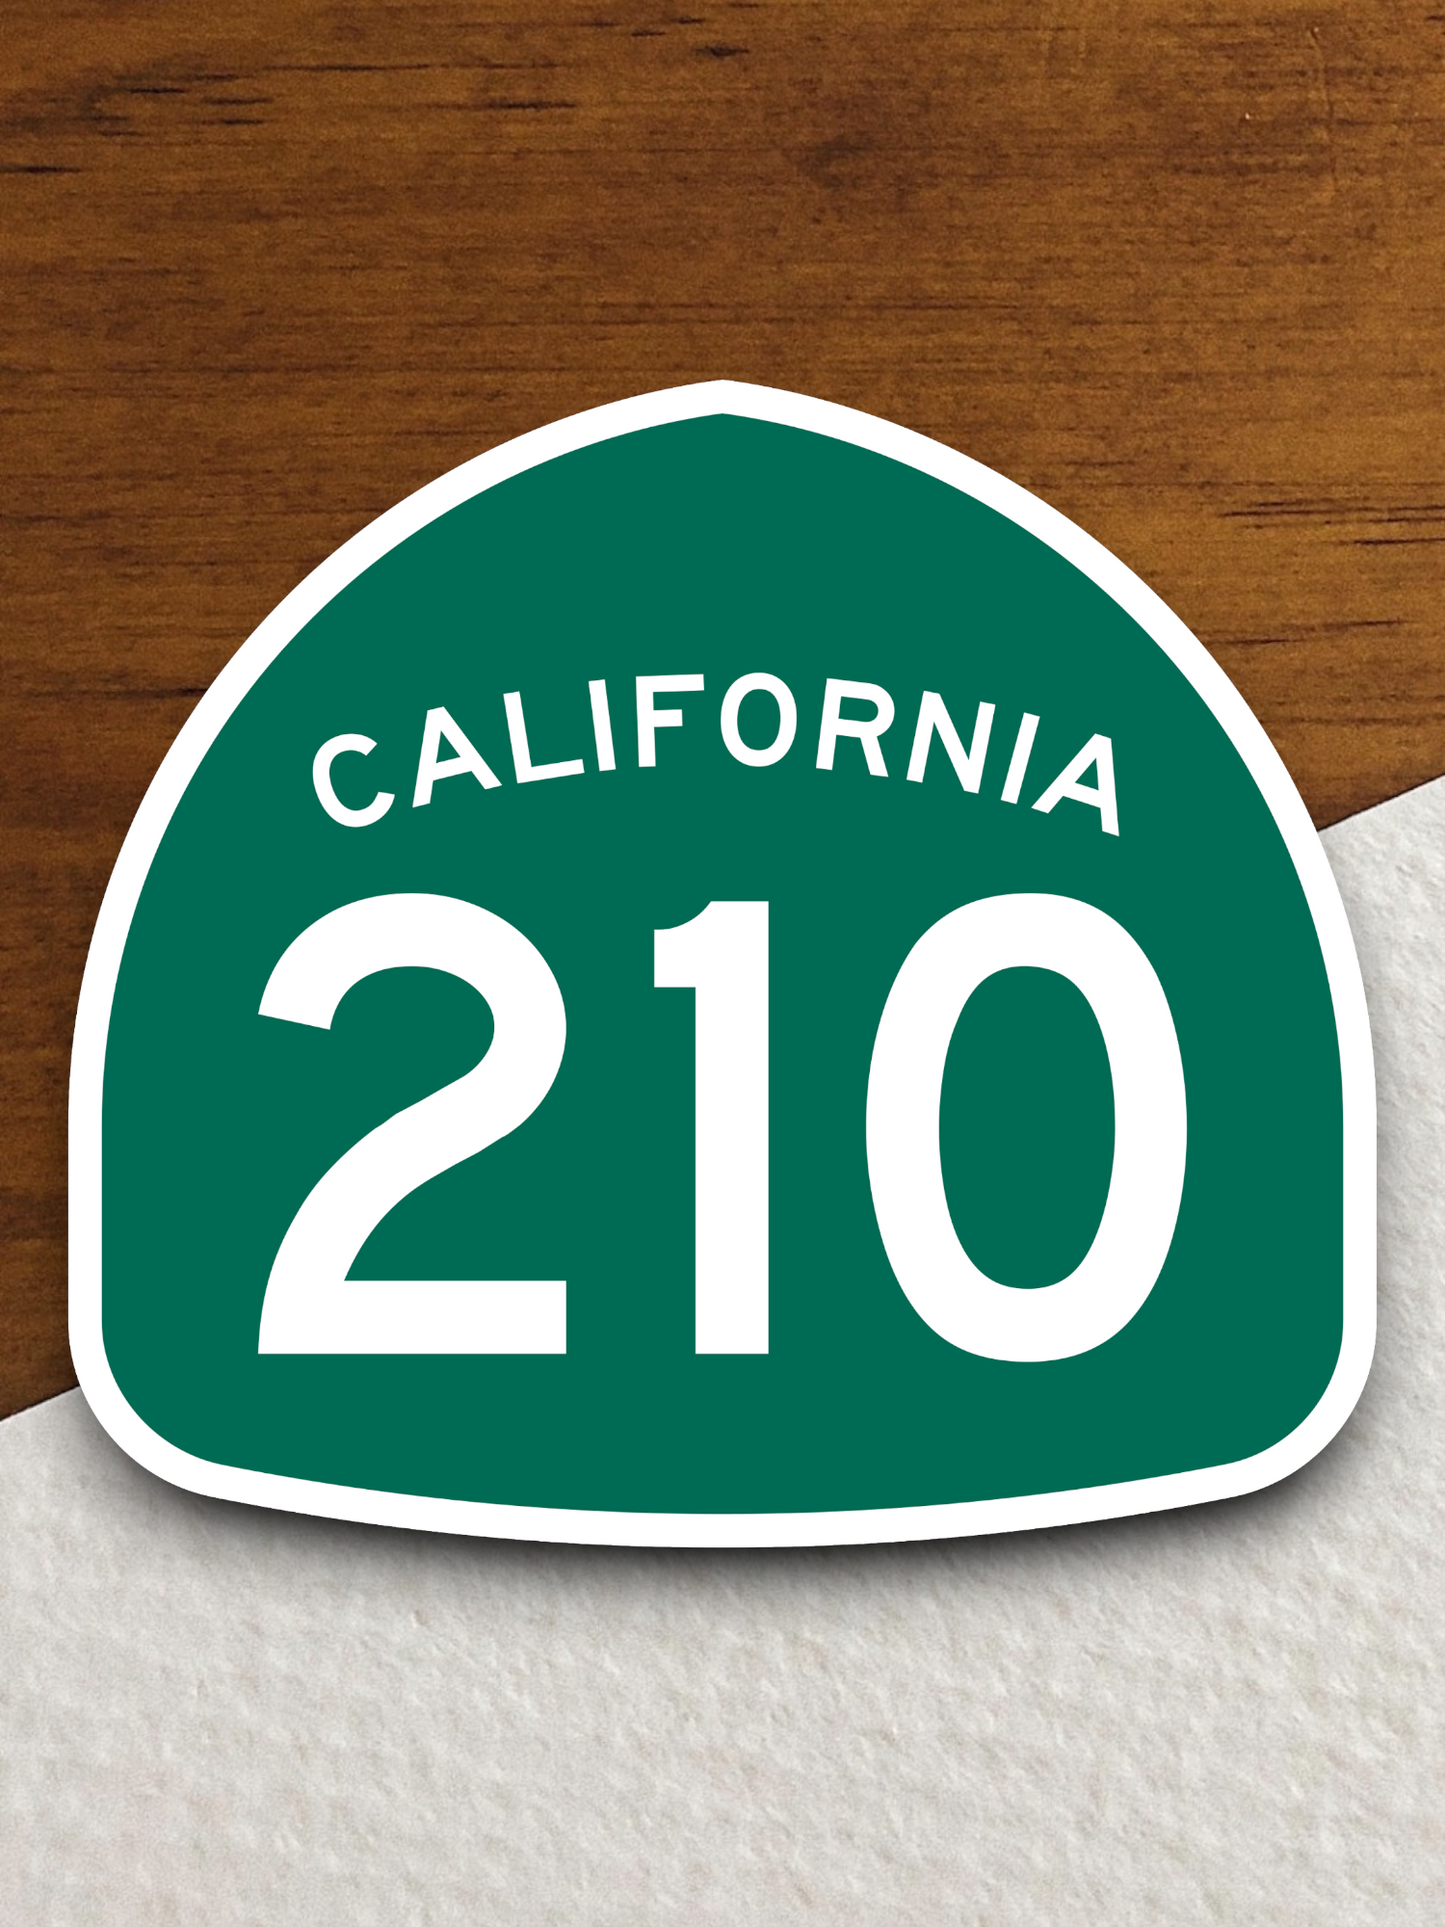 California State Route 210 Sticker